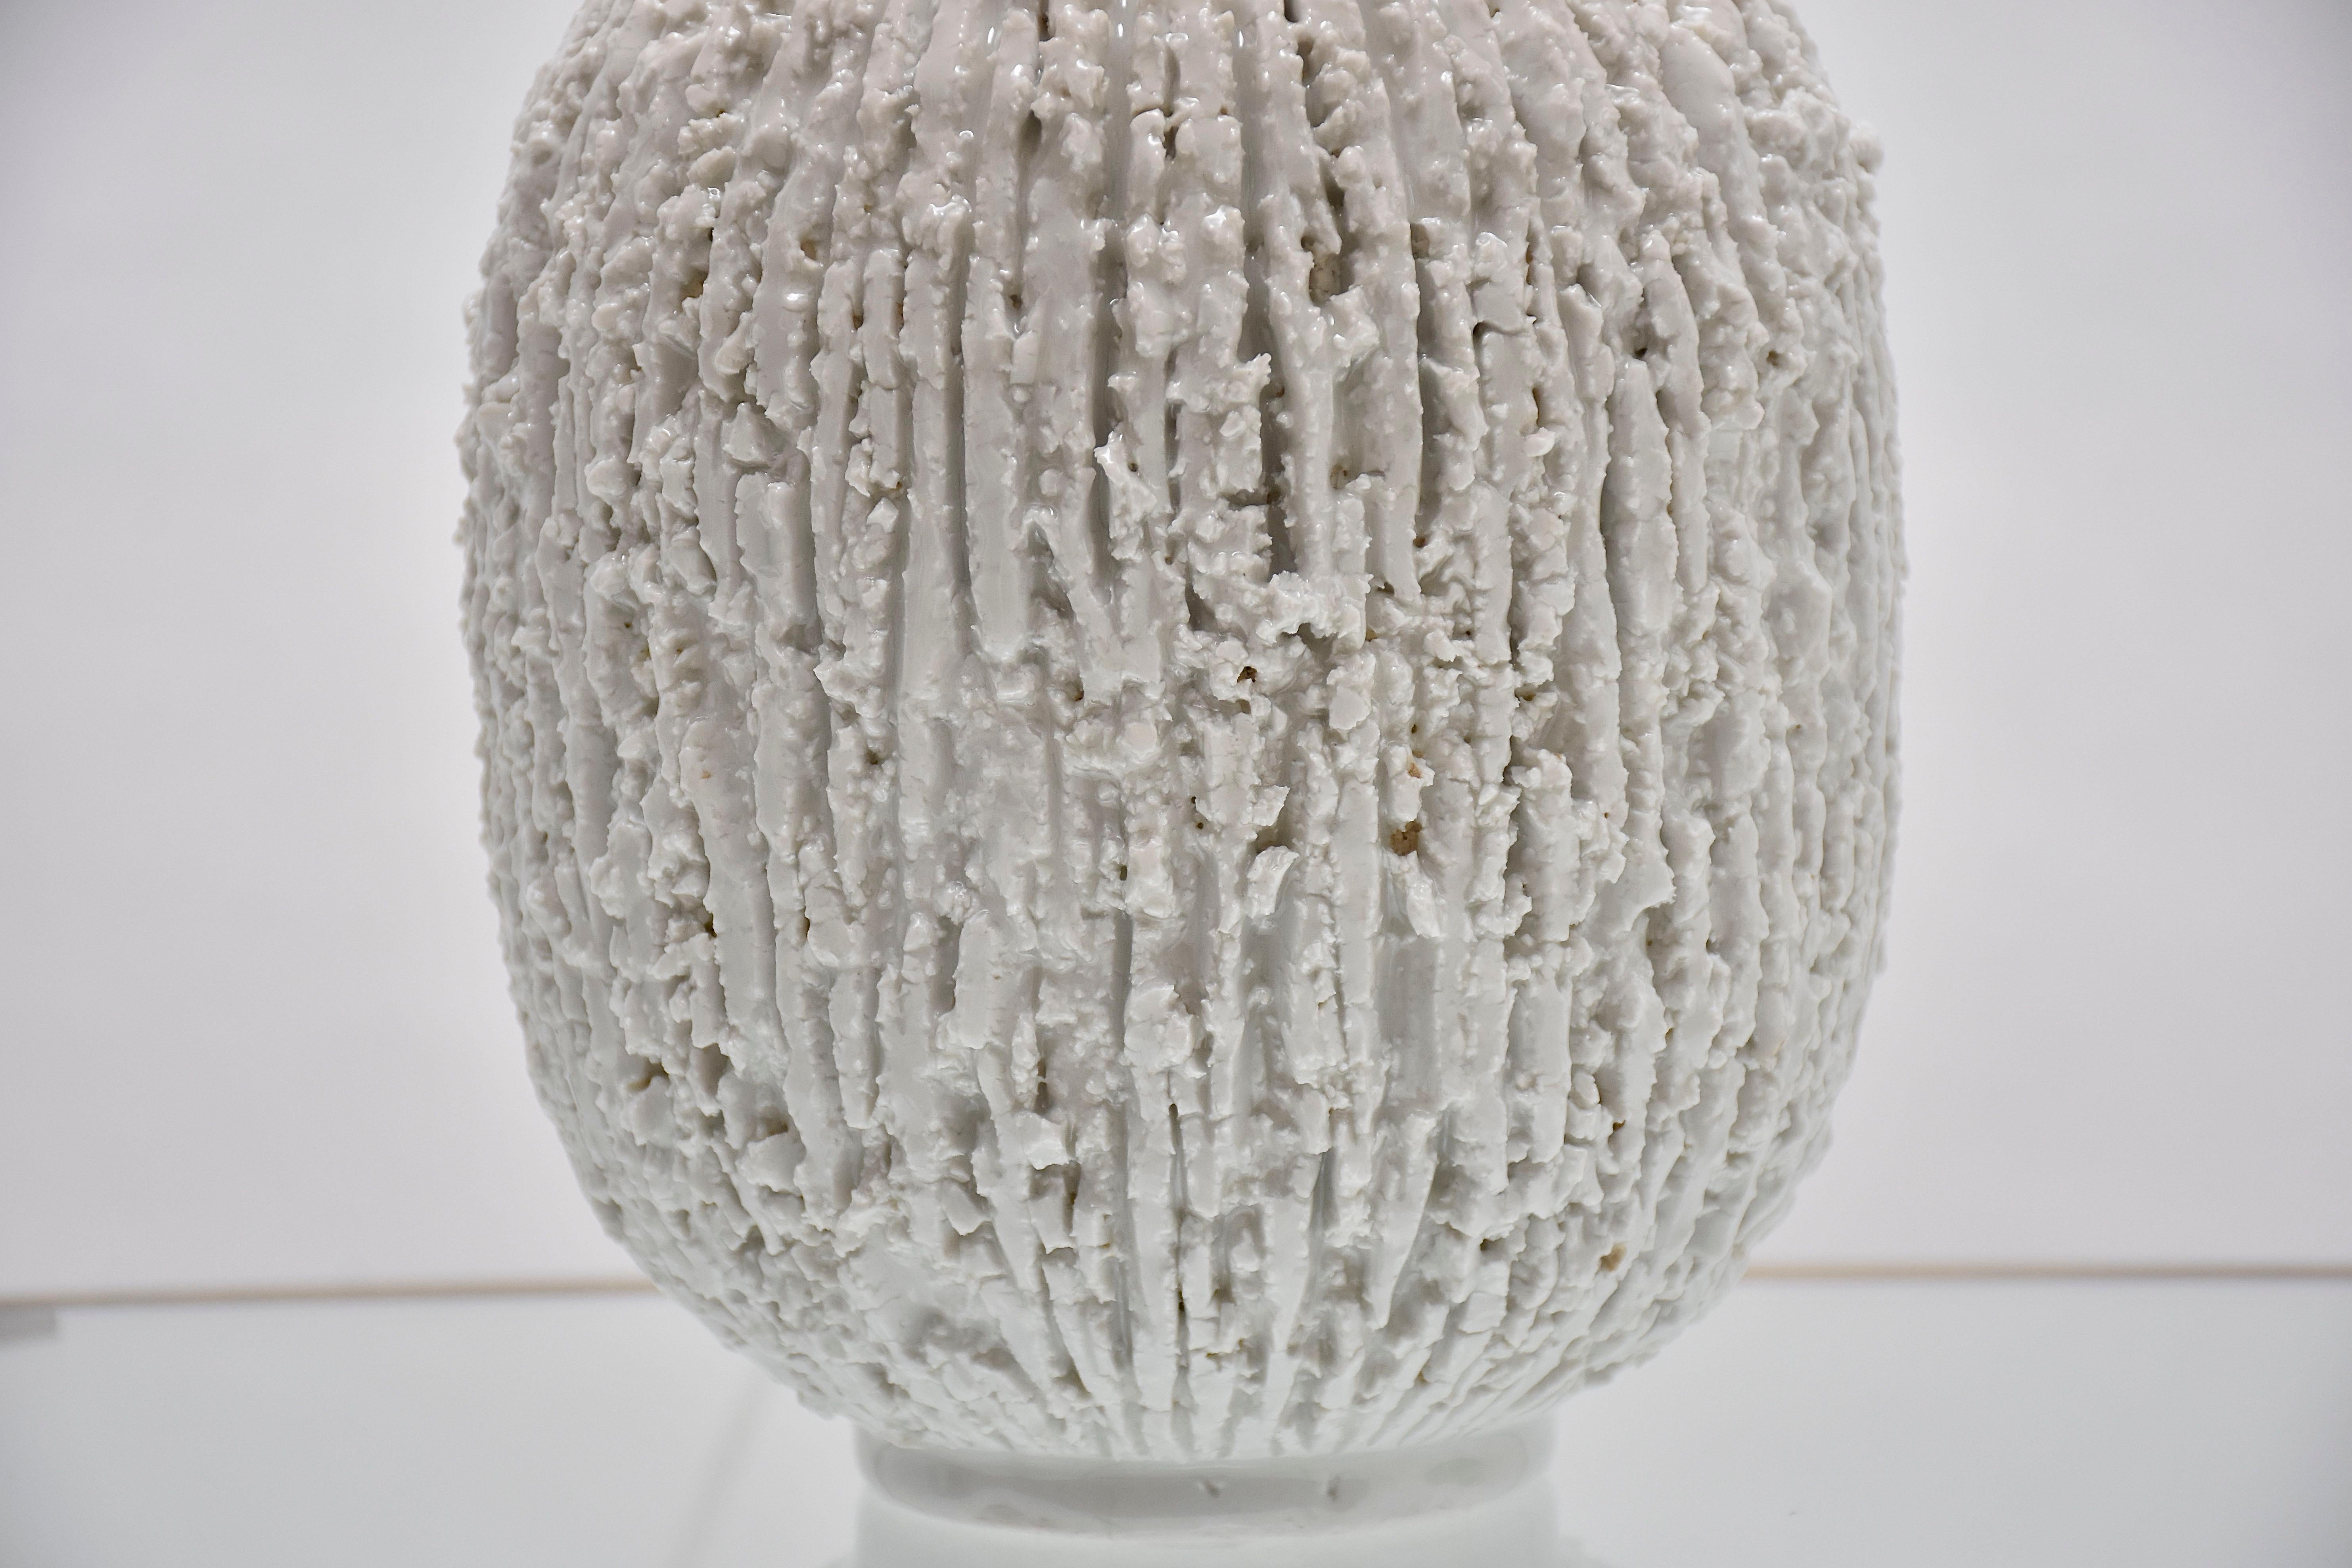 Atemberaubende und hochwertige Keramik-Tischleuchte 'Chamotte' von Gunnar Nylund- schwedischer Künstler und Keramikdesigner.
Diese schöne Lampe wurde von der berühmten schwedischen Porzellanmanufaktur Rörstrand aus Steingut hergestellt und mit